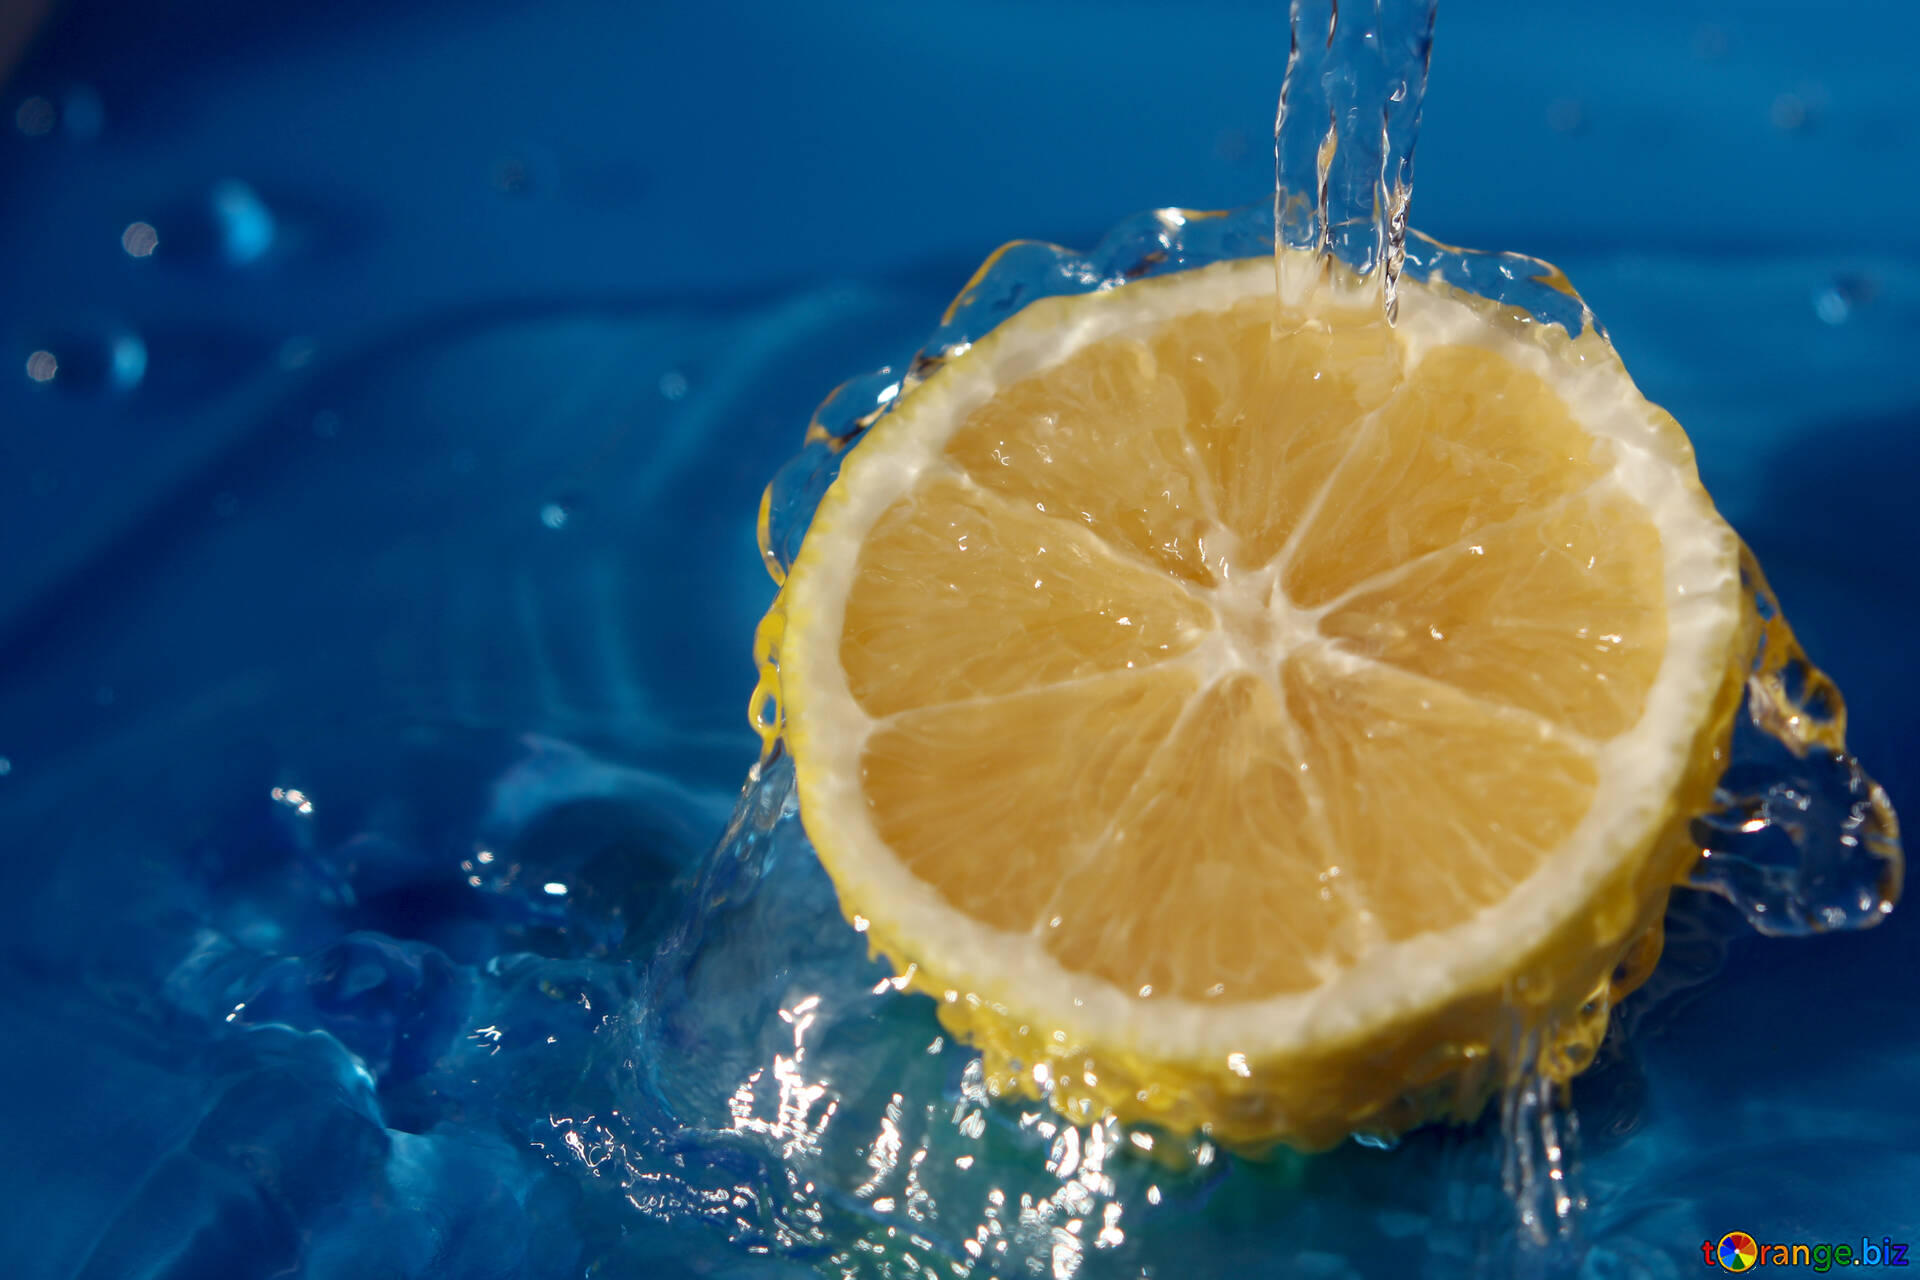 Beauty lemon : 258.734 ảnh, hình ảnh có sẵn và ảnh miễn phí bản quyền |  Shutterstock